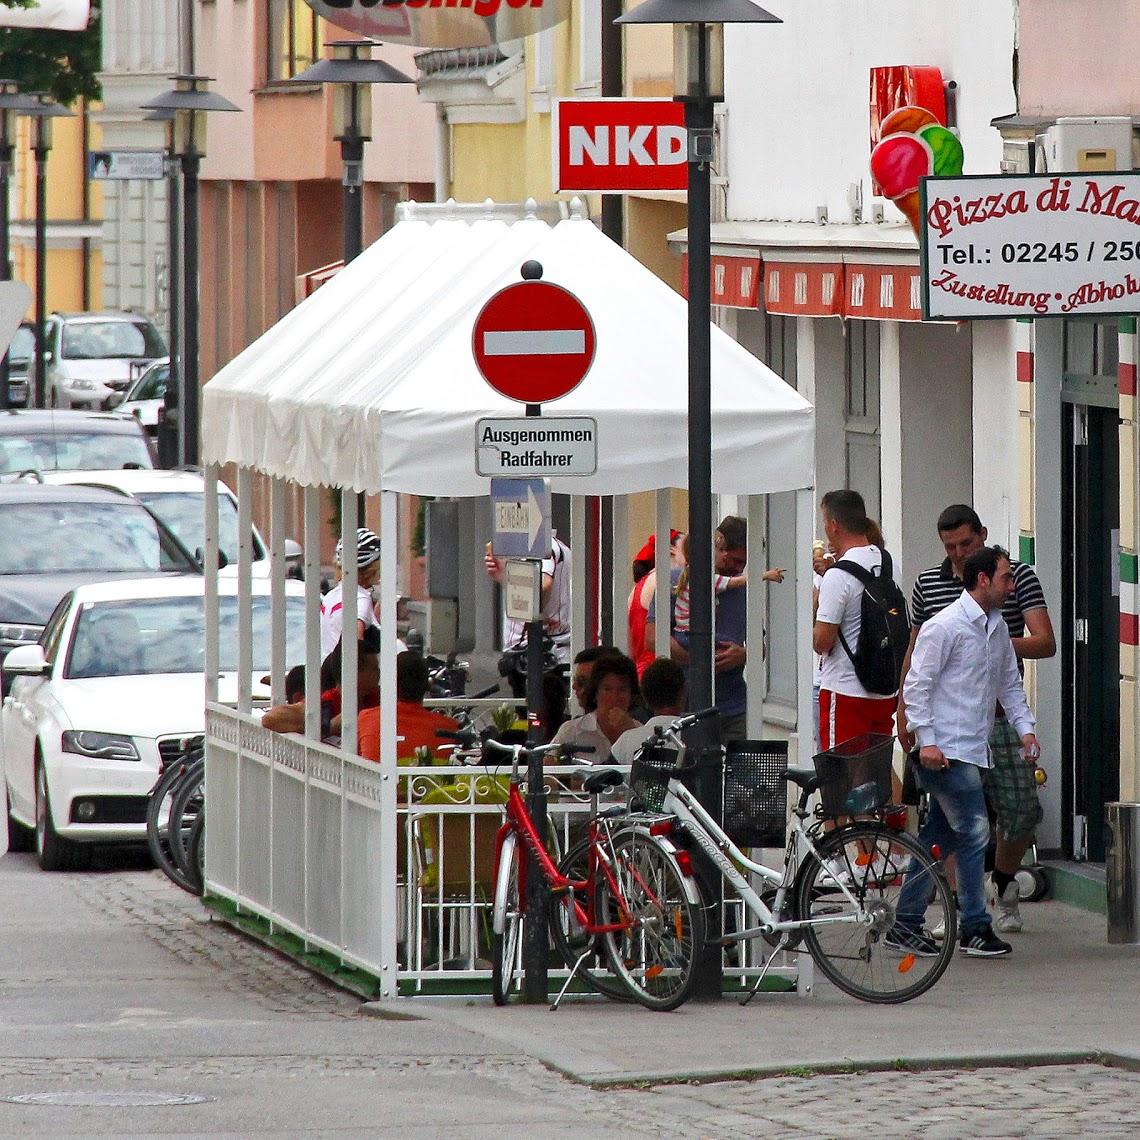 Restaurant "Pizzeria und Eis Salon di Mare Wolkersdorf" in Wolkersdorf im Weinviertel